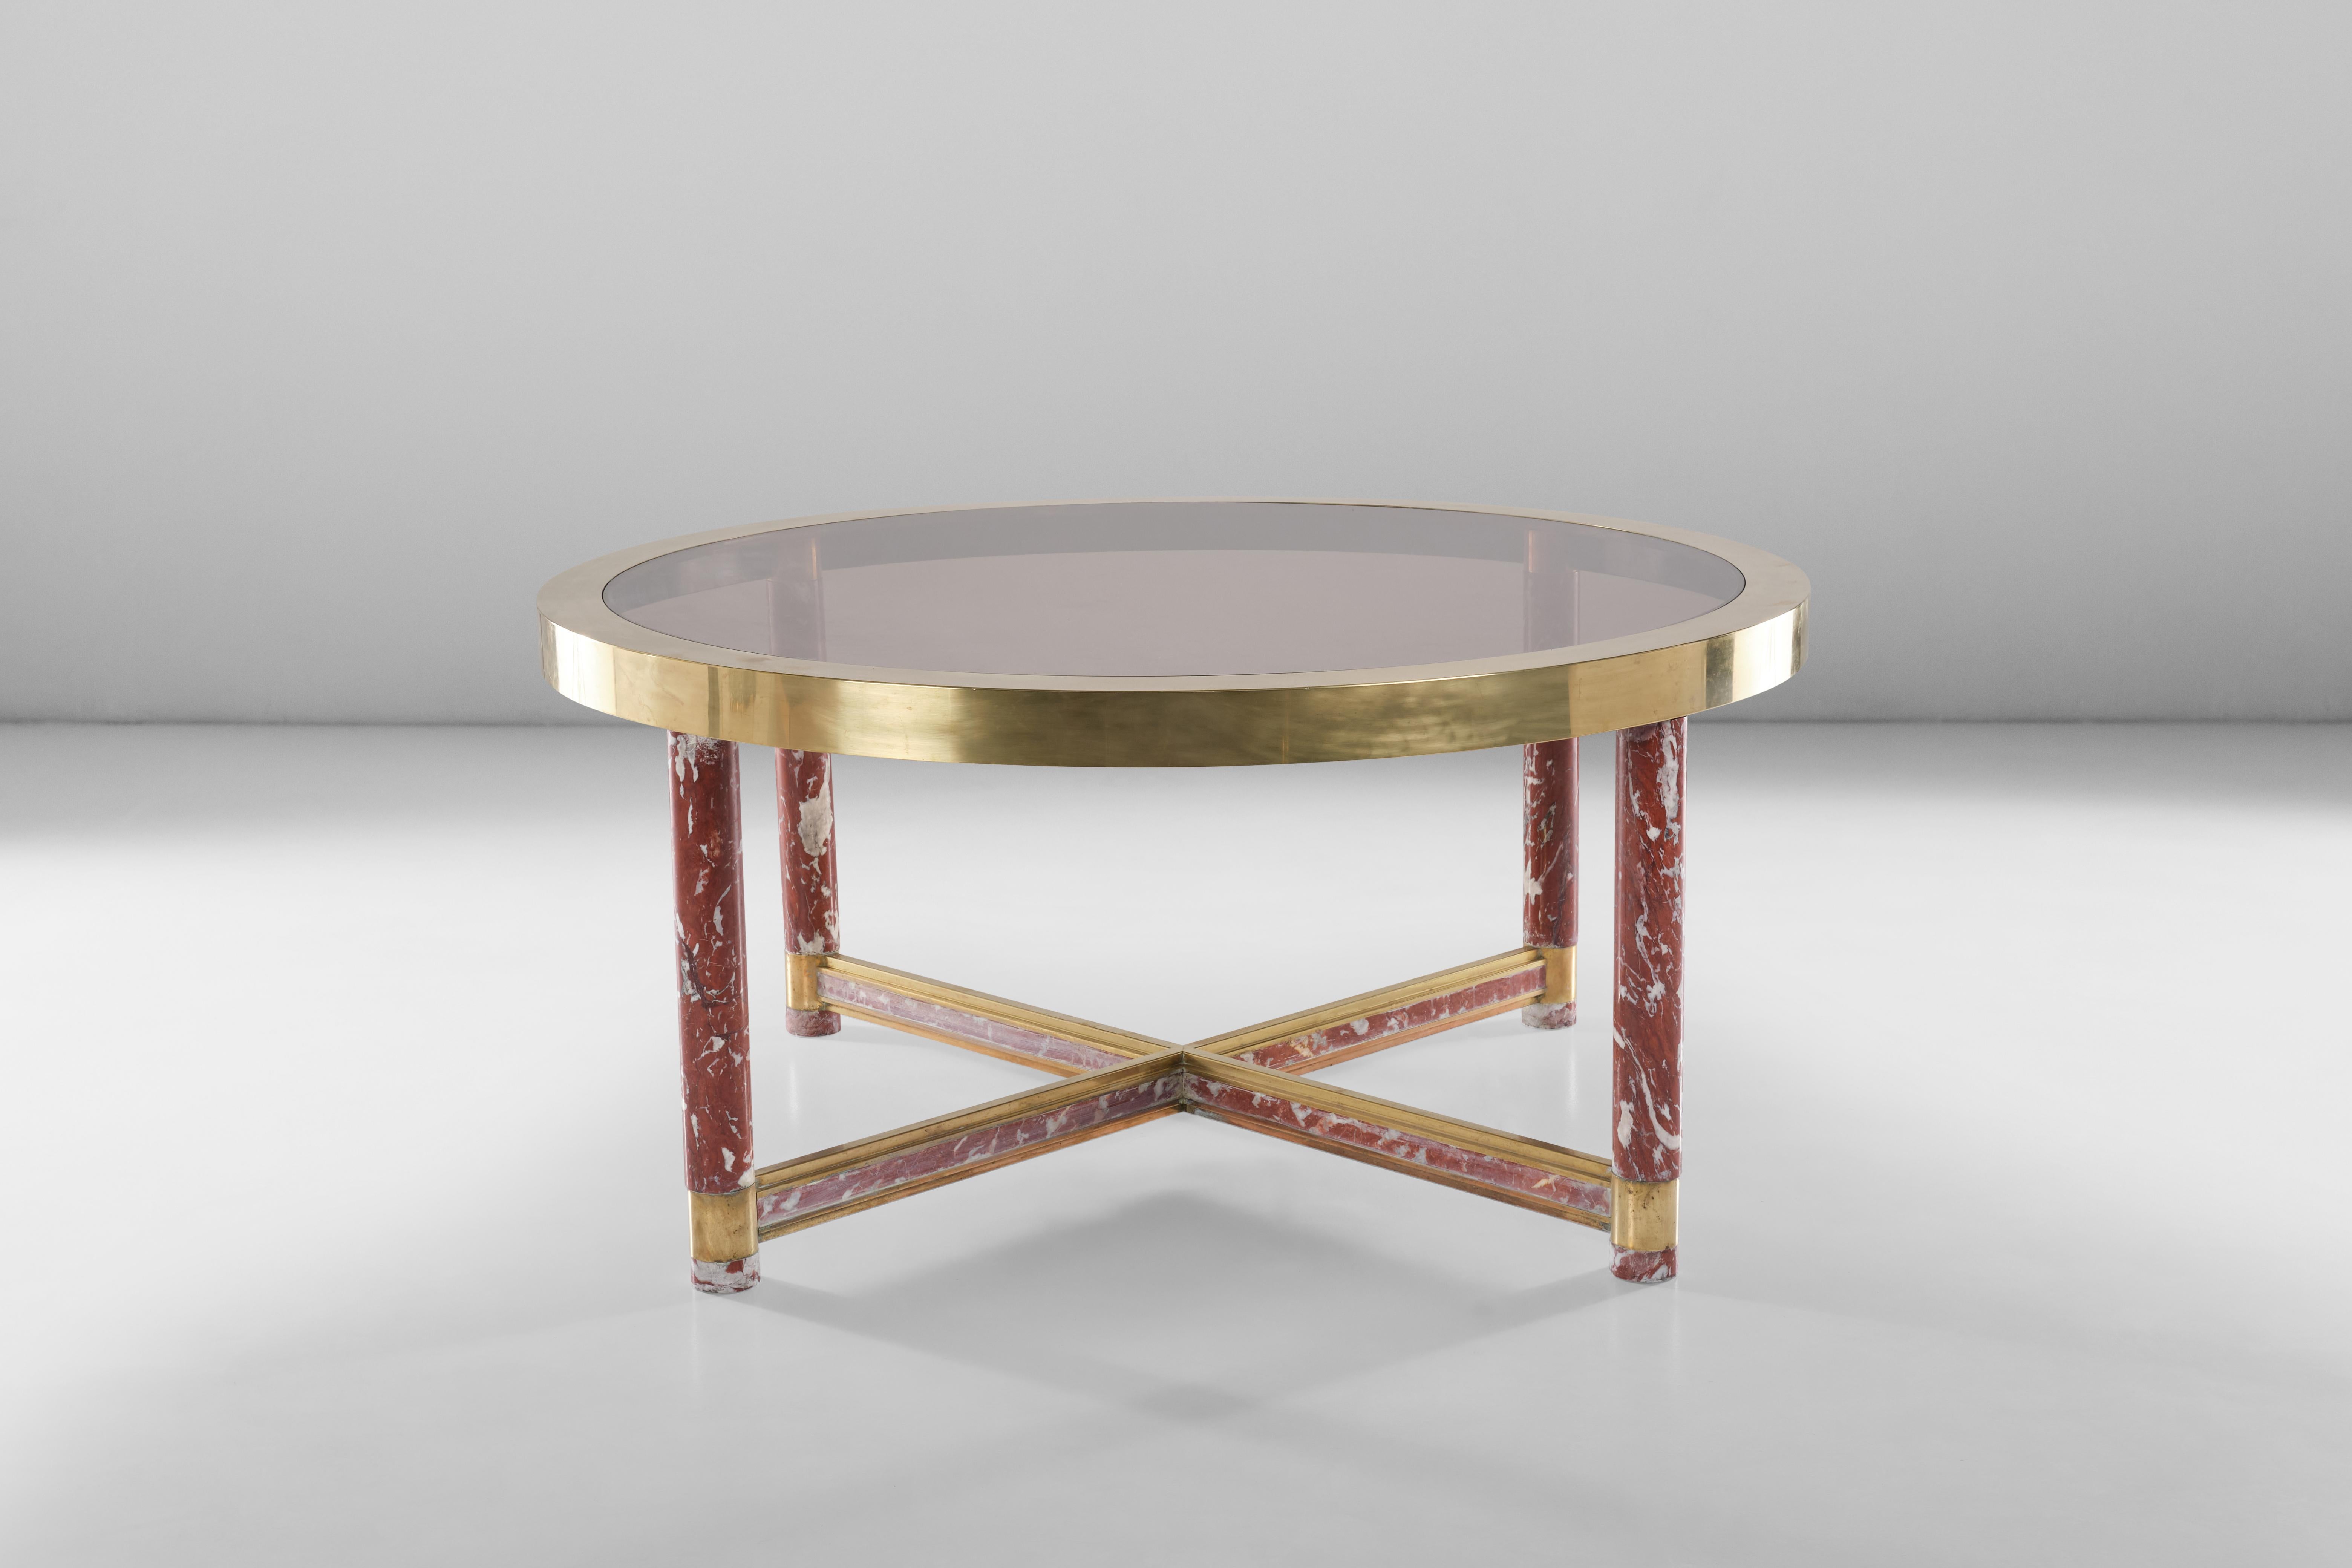 Dieser große runde Tisch, der von Sandro Petti für Metalarte entworfen wurde, bringt alle Materialien, von rotem Marmor bis hin zu Messing und Glas, perfekt ins Gleichgewicht und verleiht Ihrem Raum einen raffinierten Look.